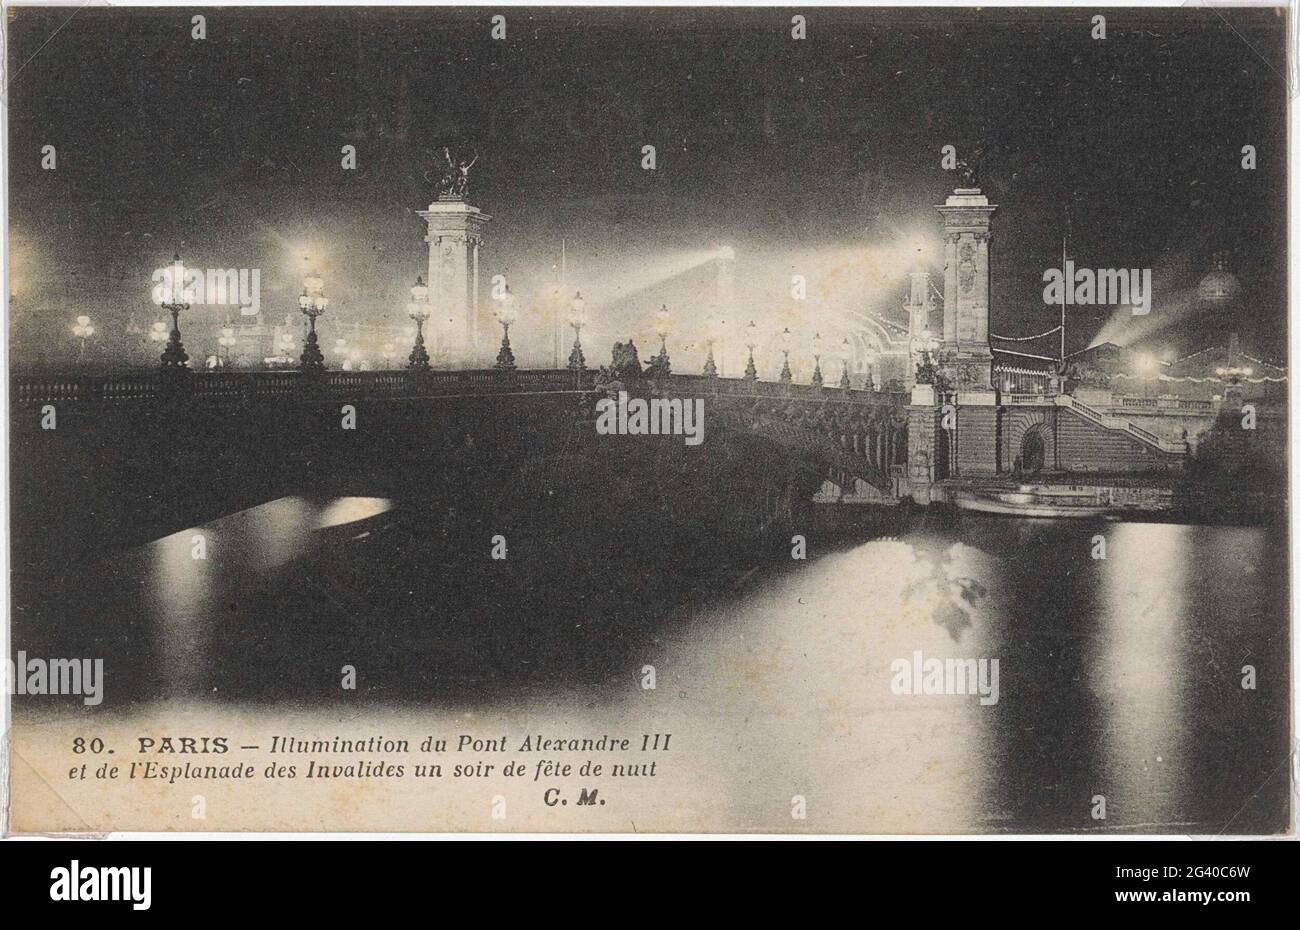 Pont illuminé Alexander-III sur l'Esplanade d'Invalides à Paris la nuit ; Paris - Illumination du pont Alexandre III et de l'Esplanade des Invalides une soirée de nuit. . Banque D'Images